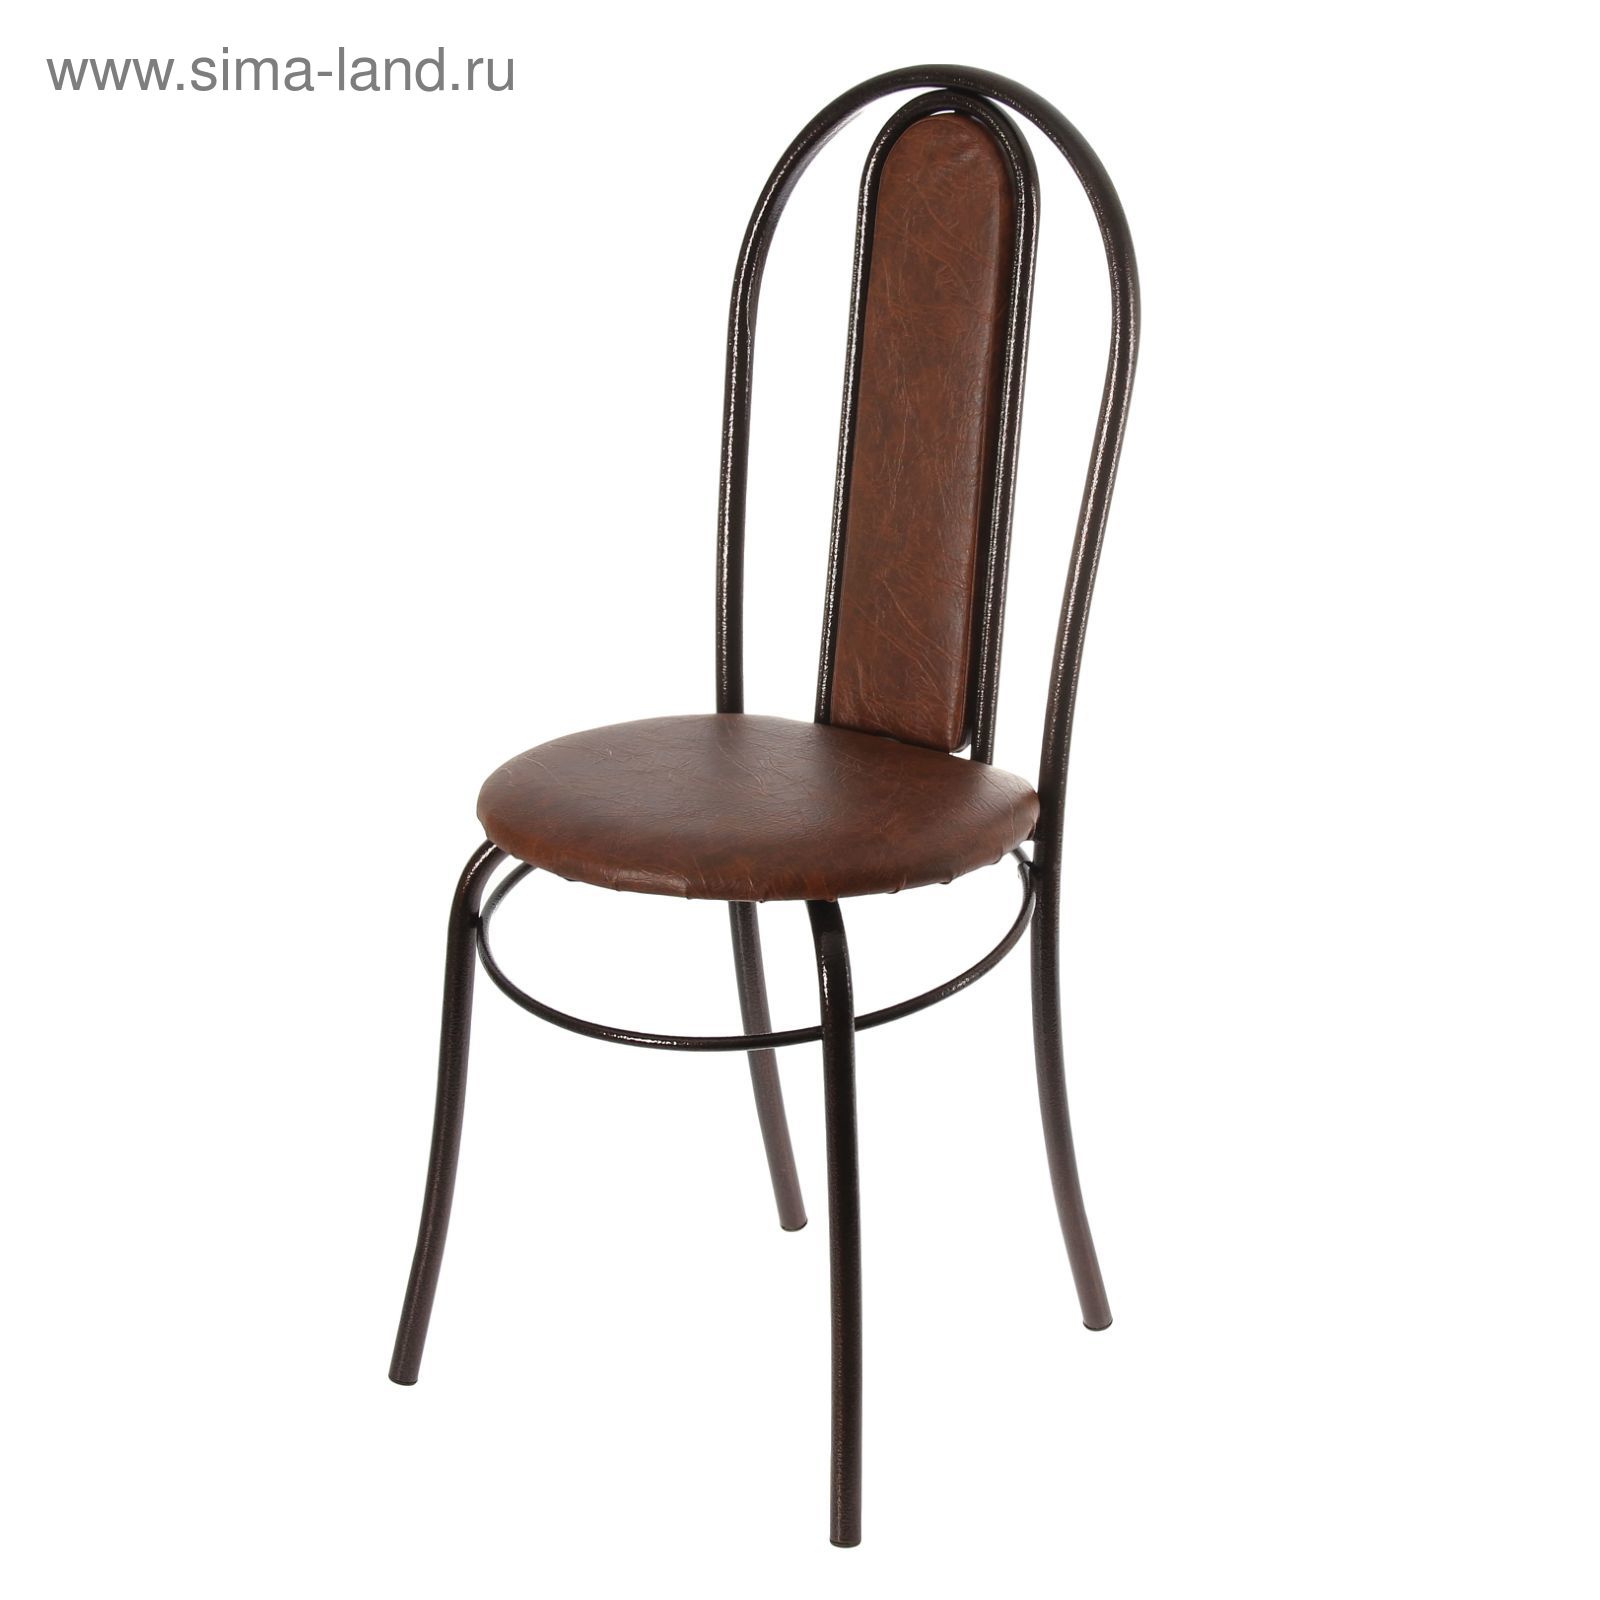 стул венский на металлокаркасе с мягкой спинкой